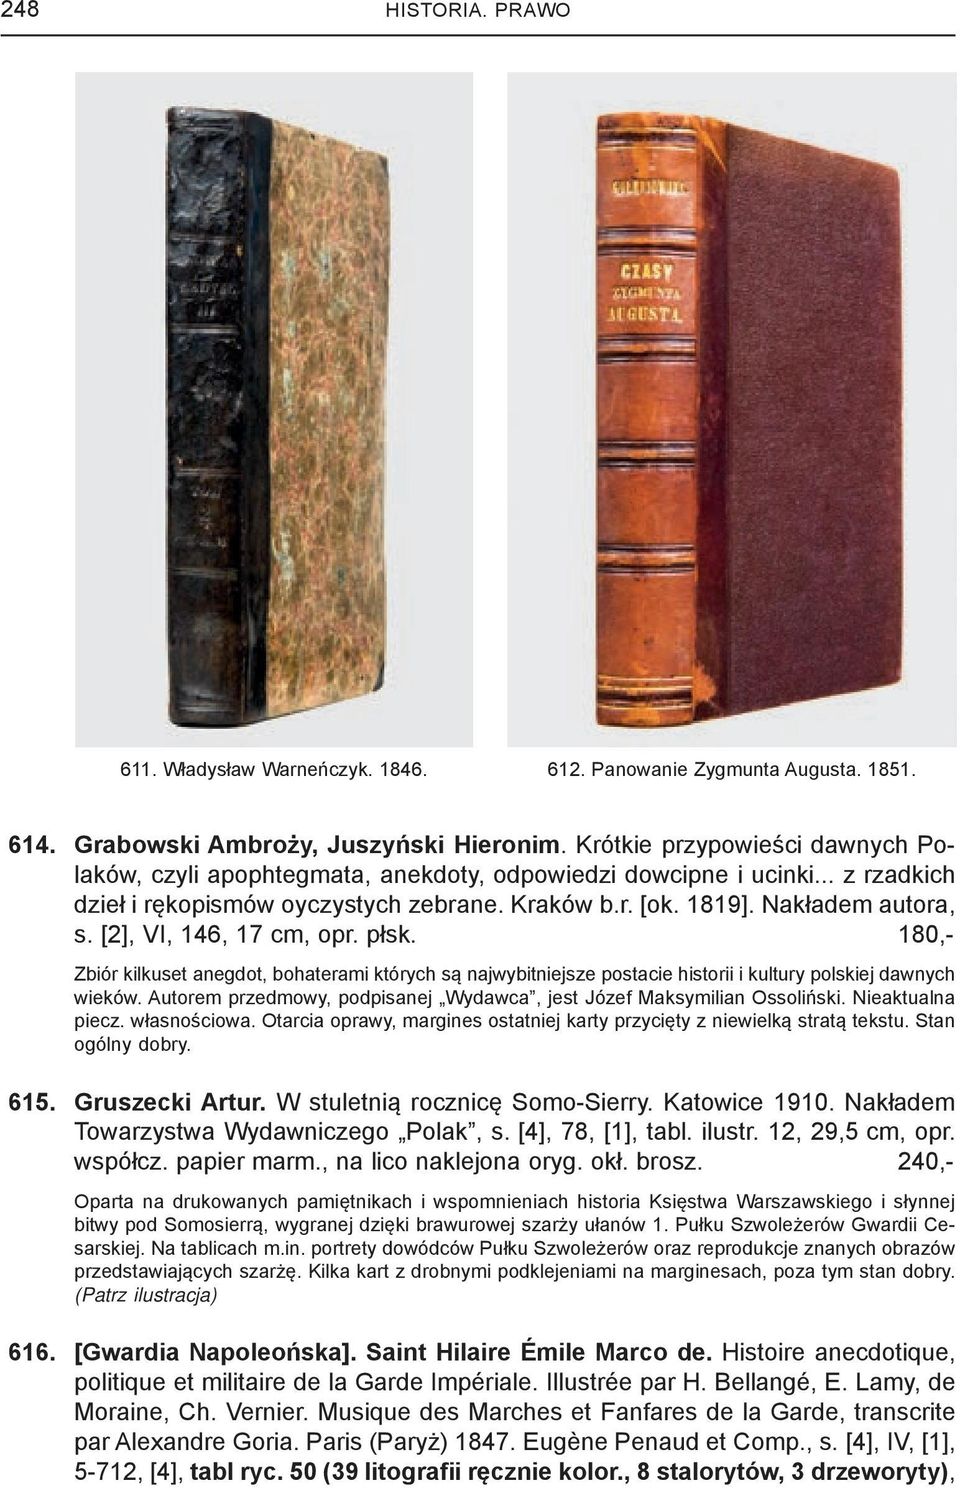 [2], VI, 146, 17 cm, opr. płsk. 180,- Zbiór kilkuset anegdot, bohaterami których są najwybitniejsze postacie historii i kultury polskiej dawnych wieków.